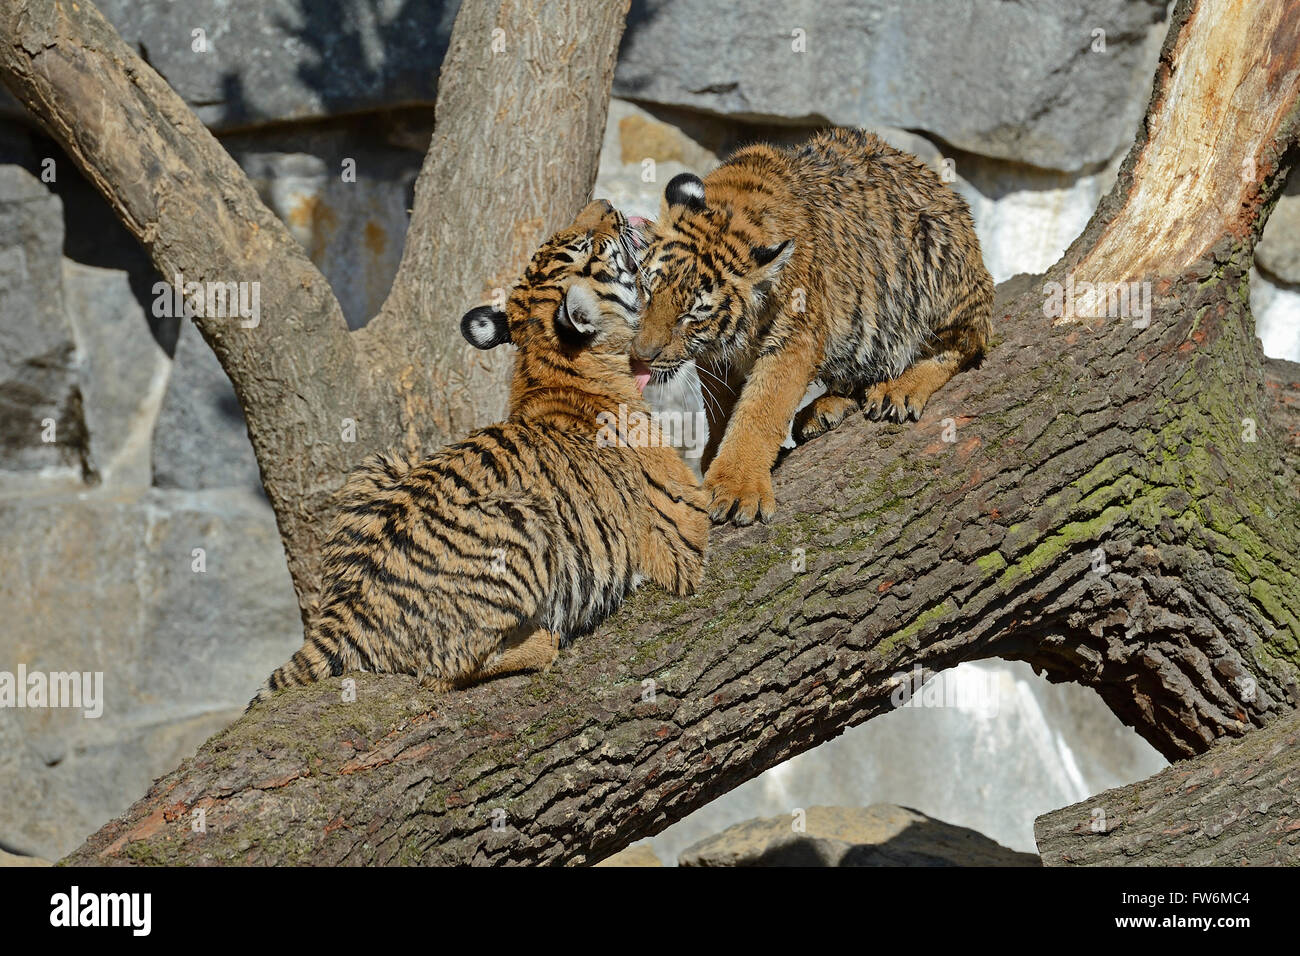 Hinterindischer Tiger (Panthera tigris corbetti) Jungtiere, Tierpark Berlin, Deutschland, Europa Stock Photo